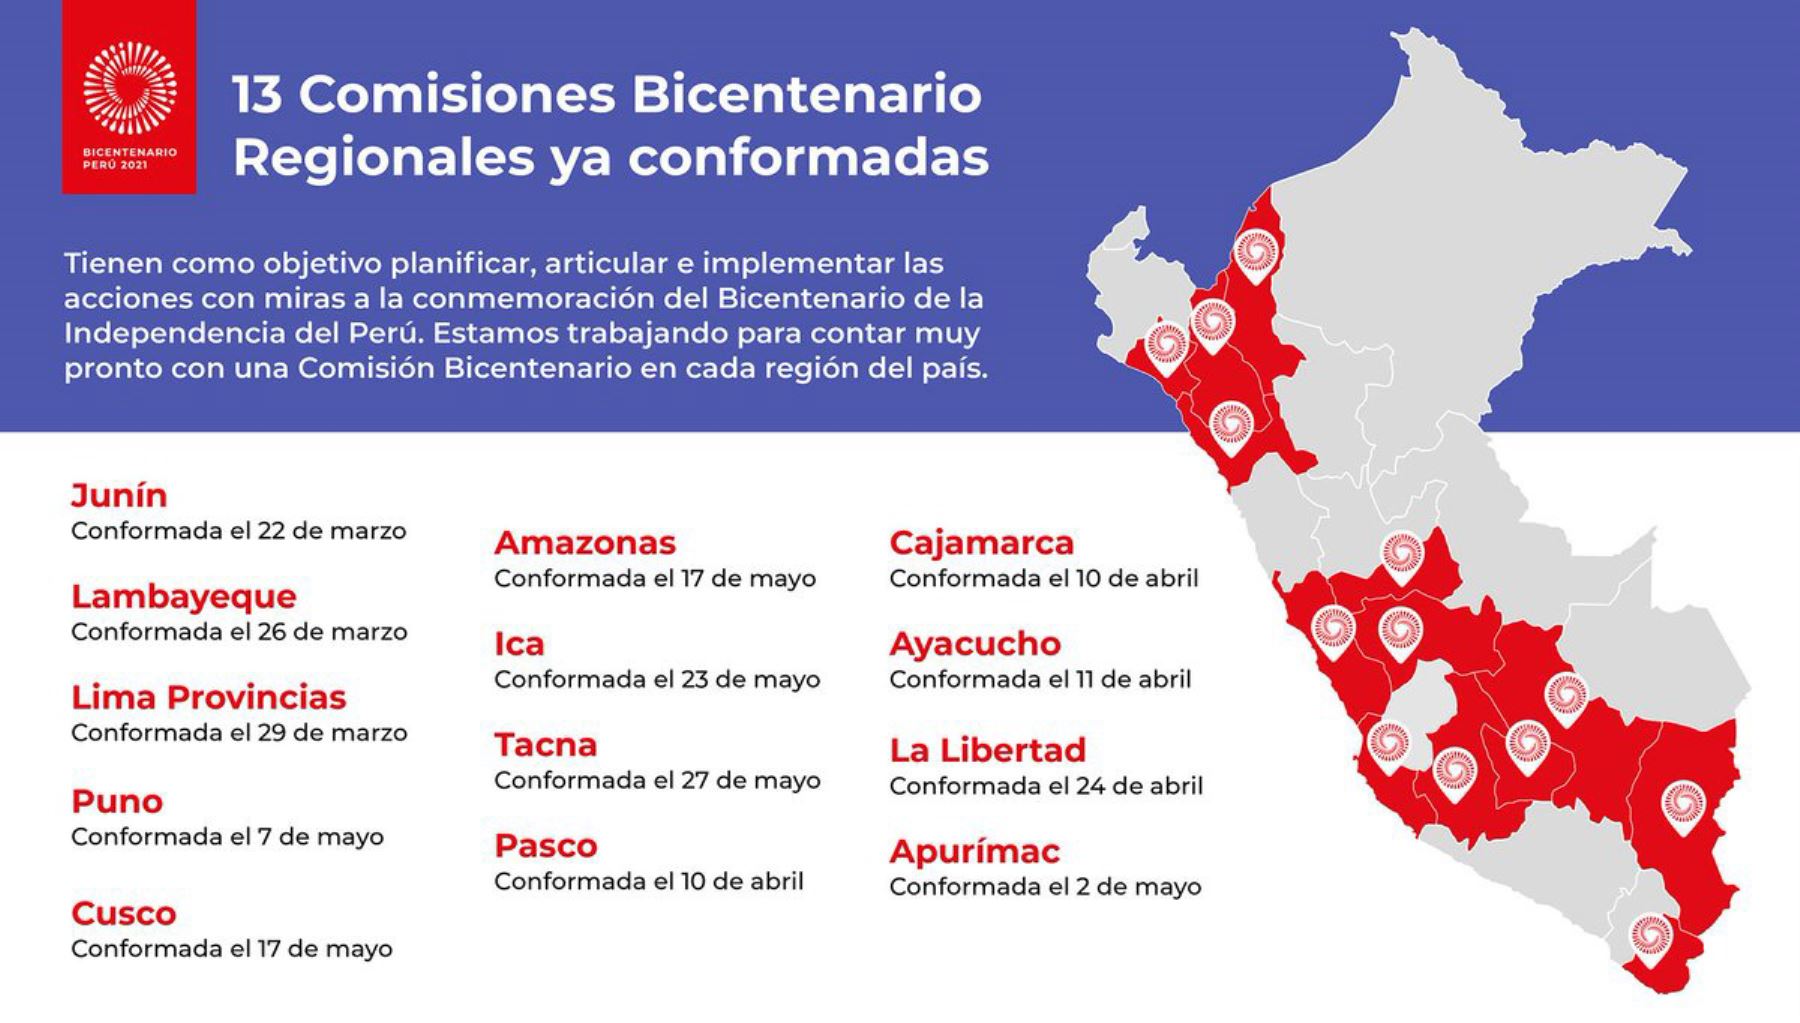 Comisiones Regionales Bicentenario conformadas hasta mayo 2019.